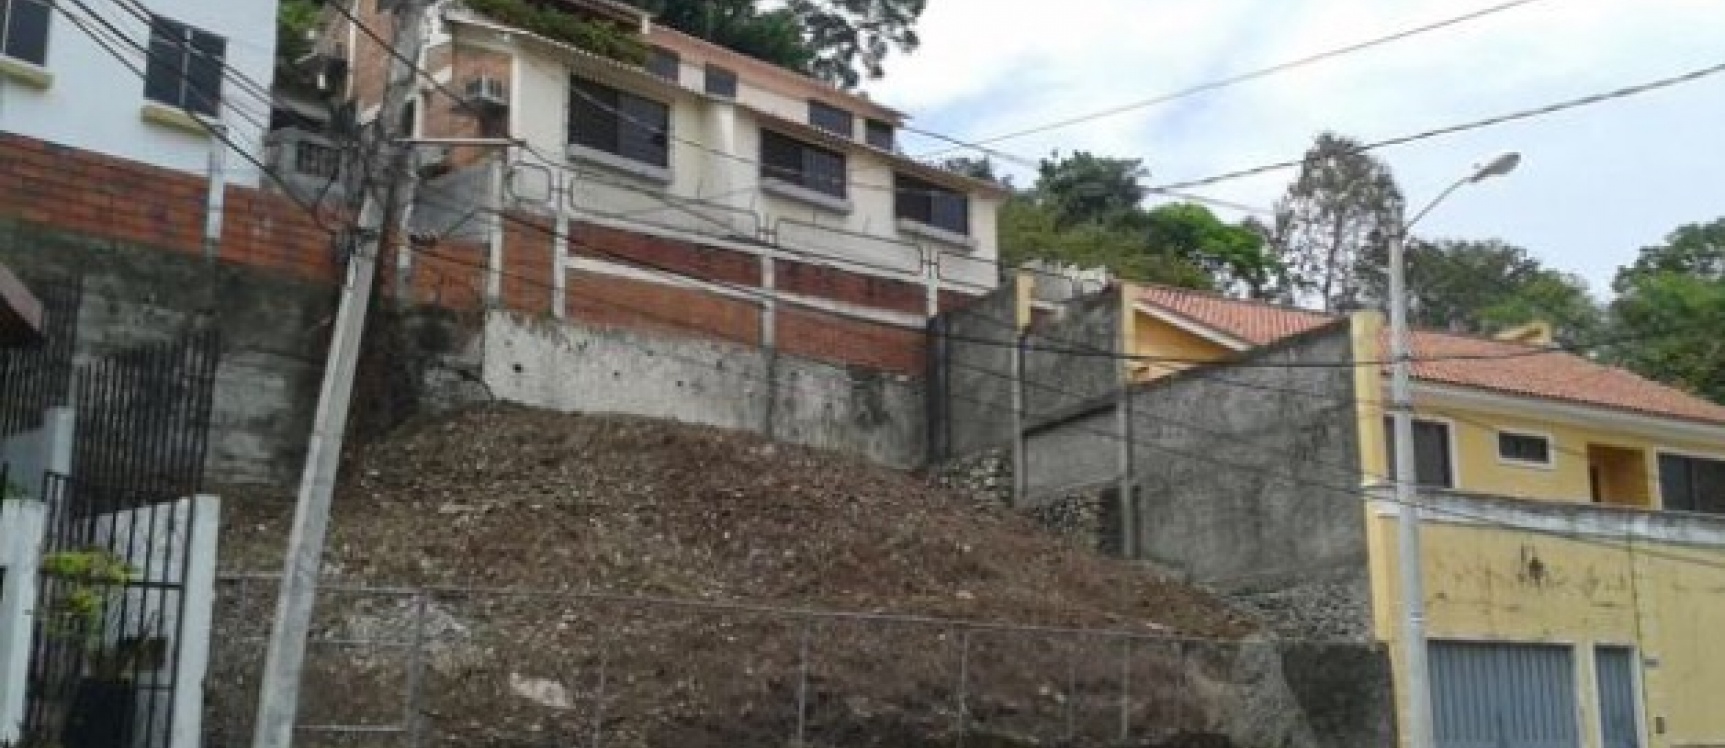 GeoBienes - Terreno en venta en Ciudadela El Paraiso - Plusvalia Guayaquil Casas de venta y alquiler Inmobiliaria Ecuador